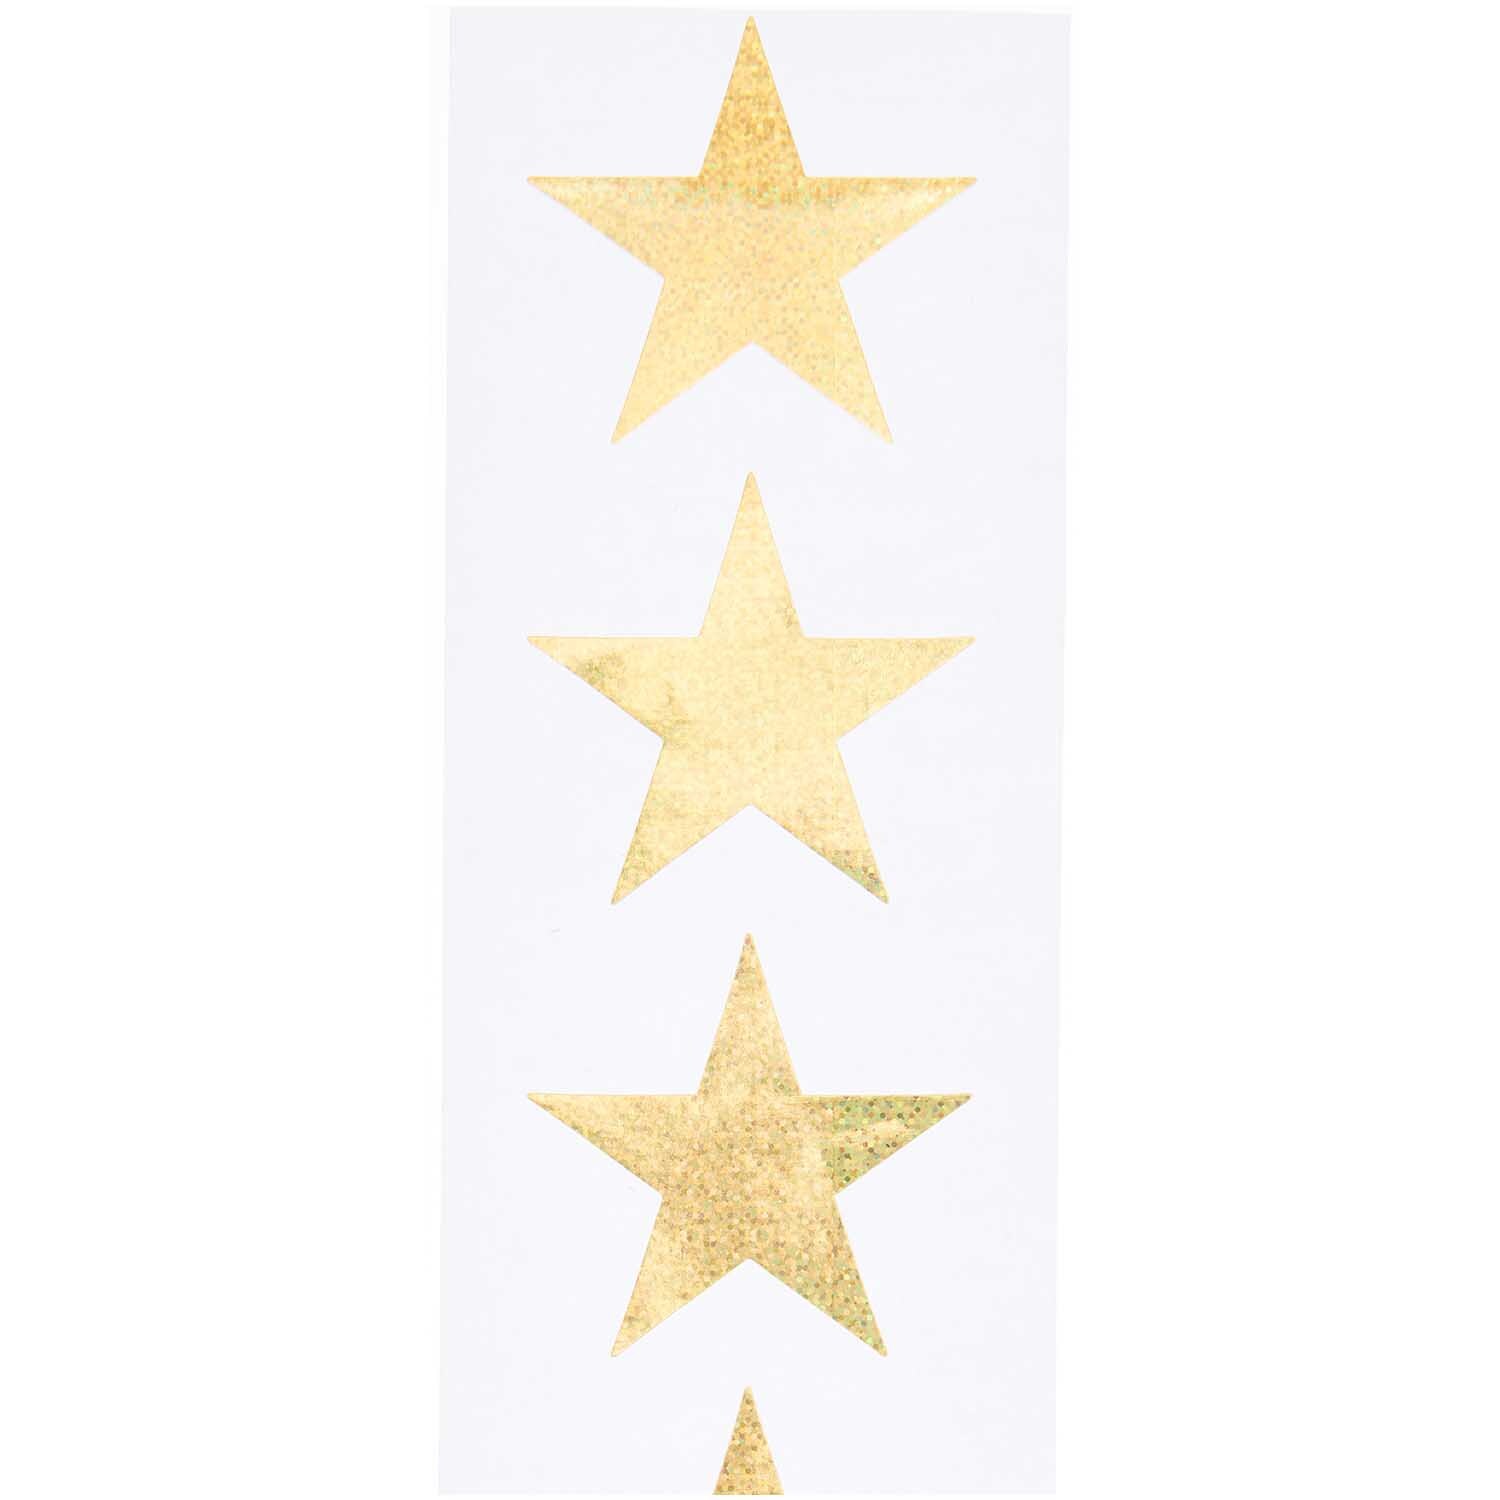 Paper Poetry Sticker Sterne 5cm 120 Stück auf der Rolle Hot Foil